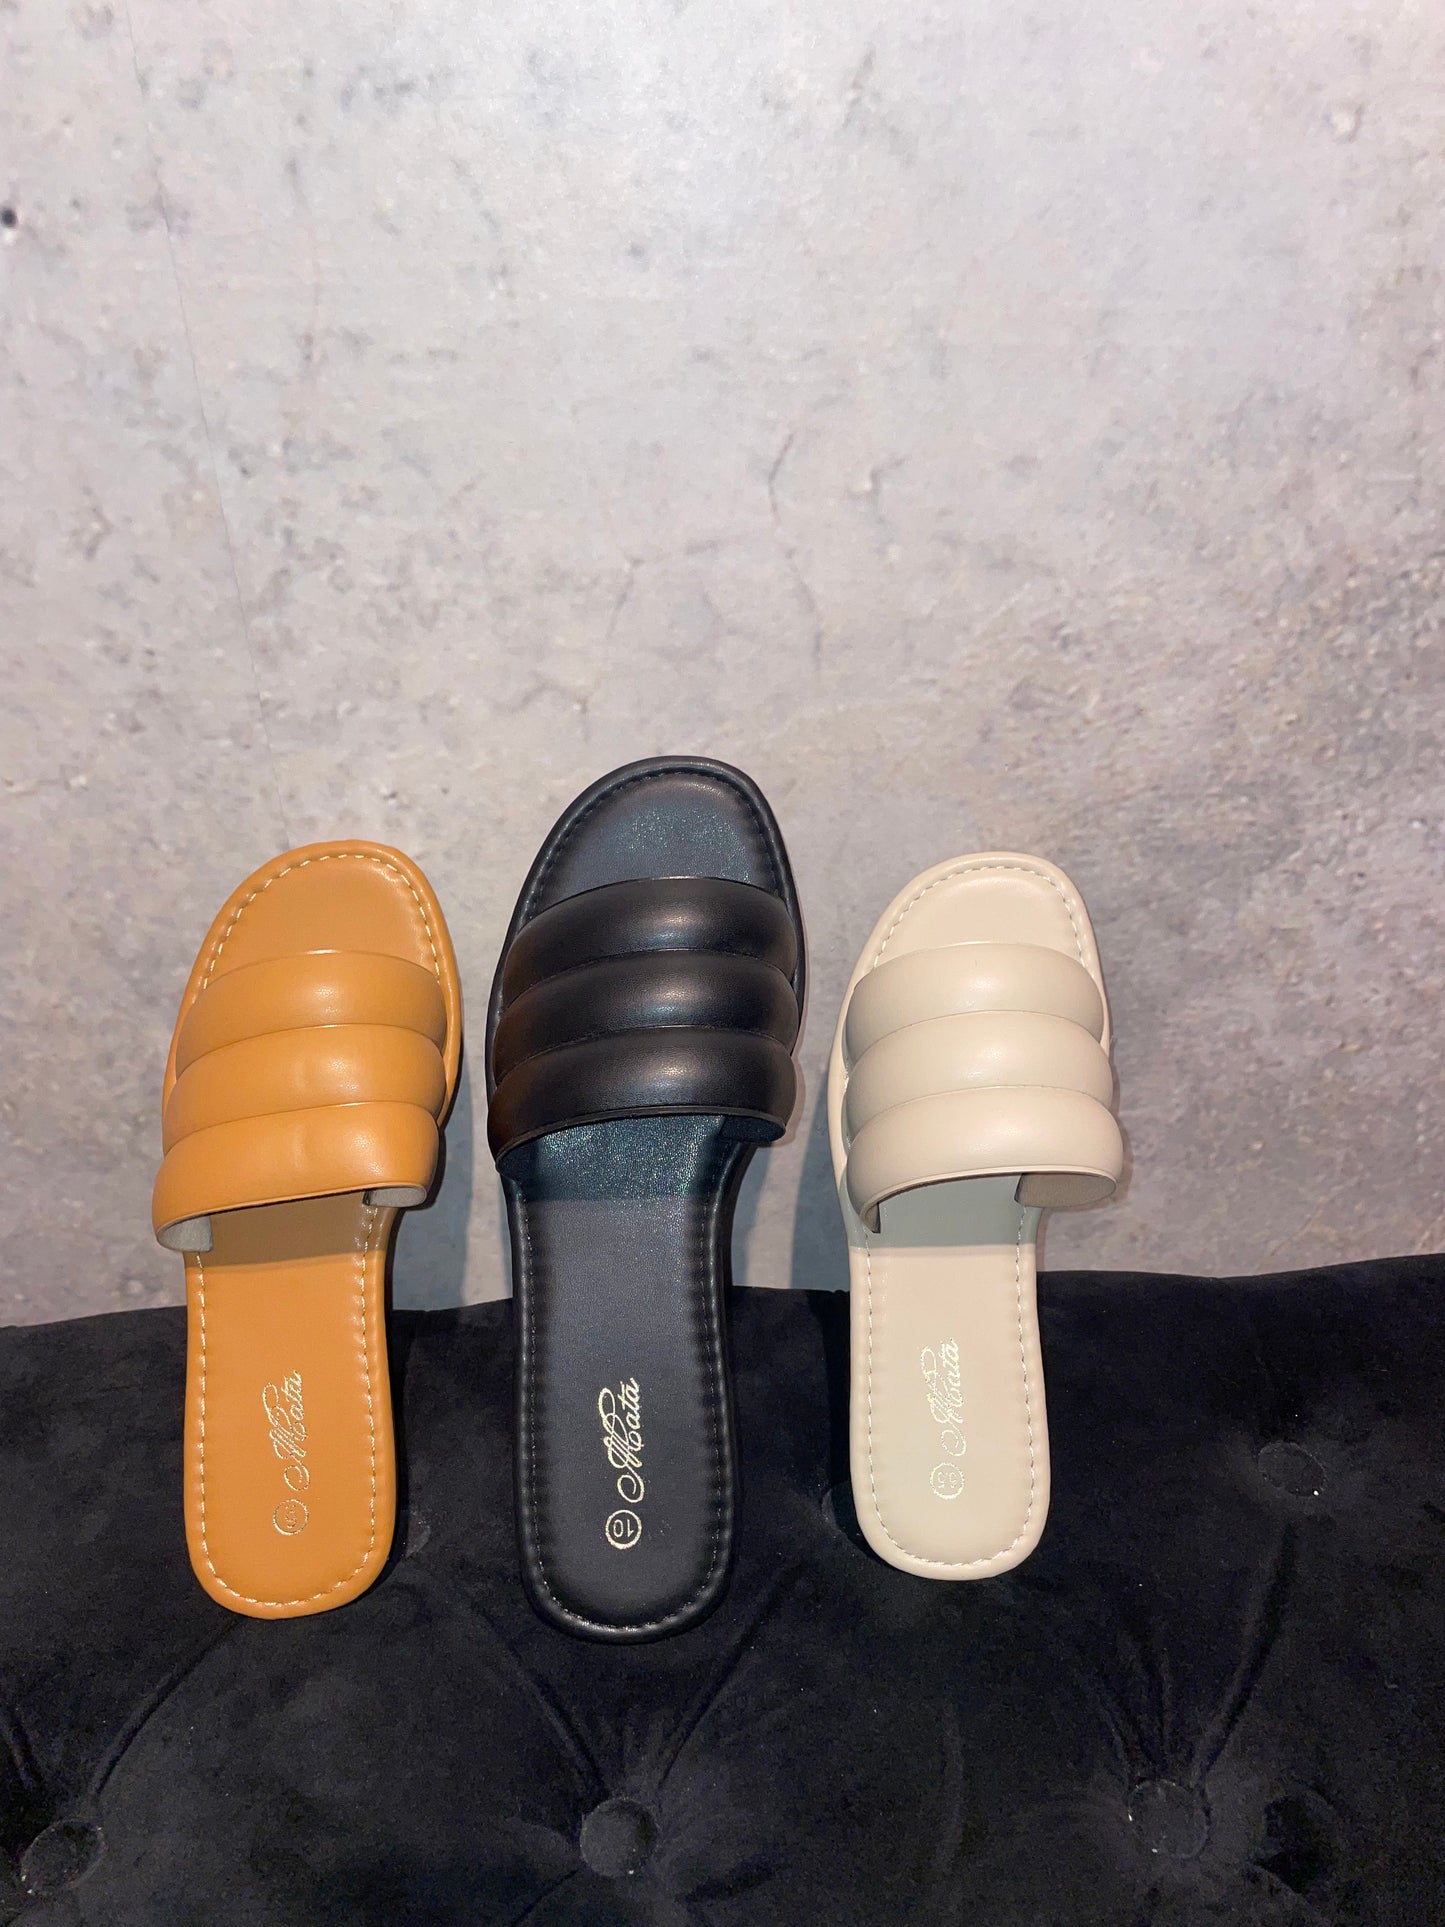 BOHO: Flat sandals